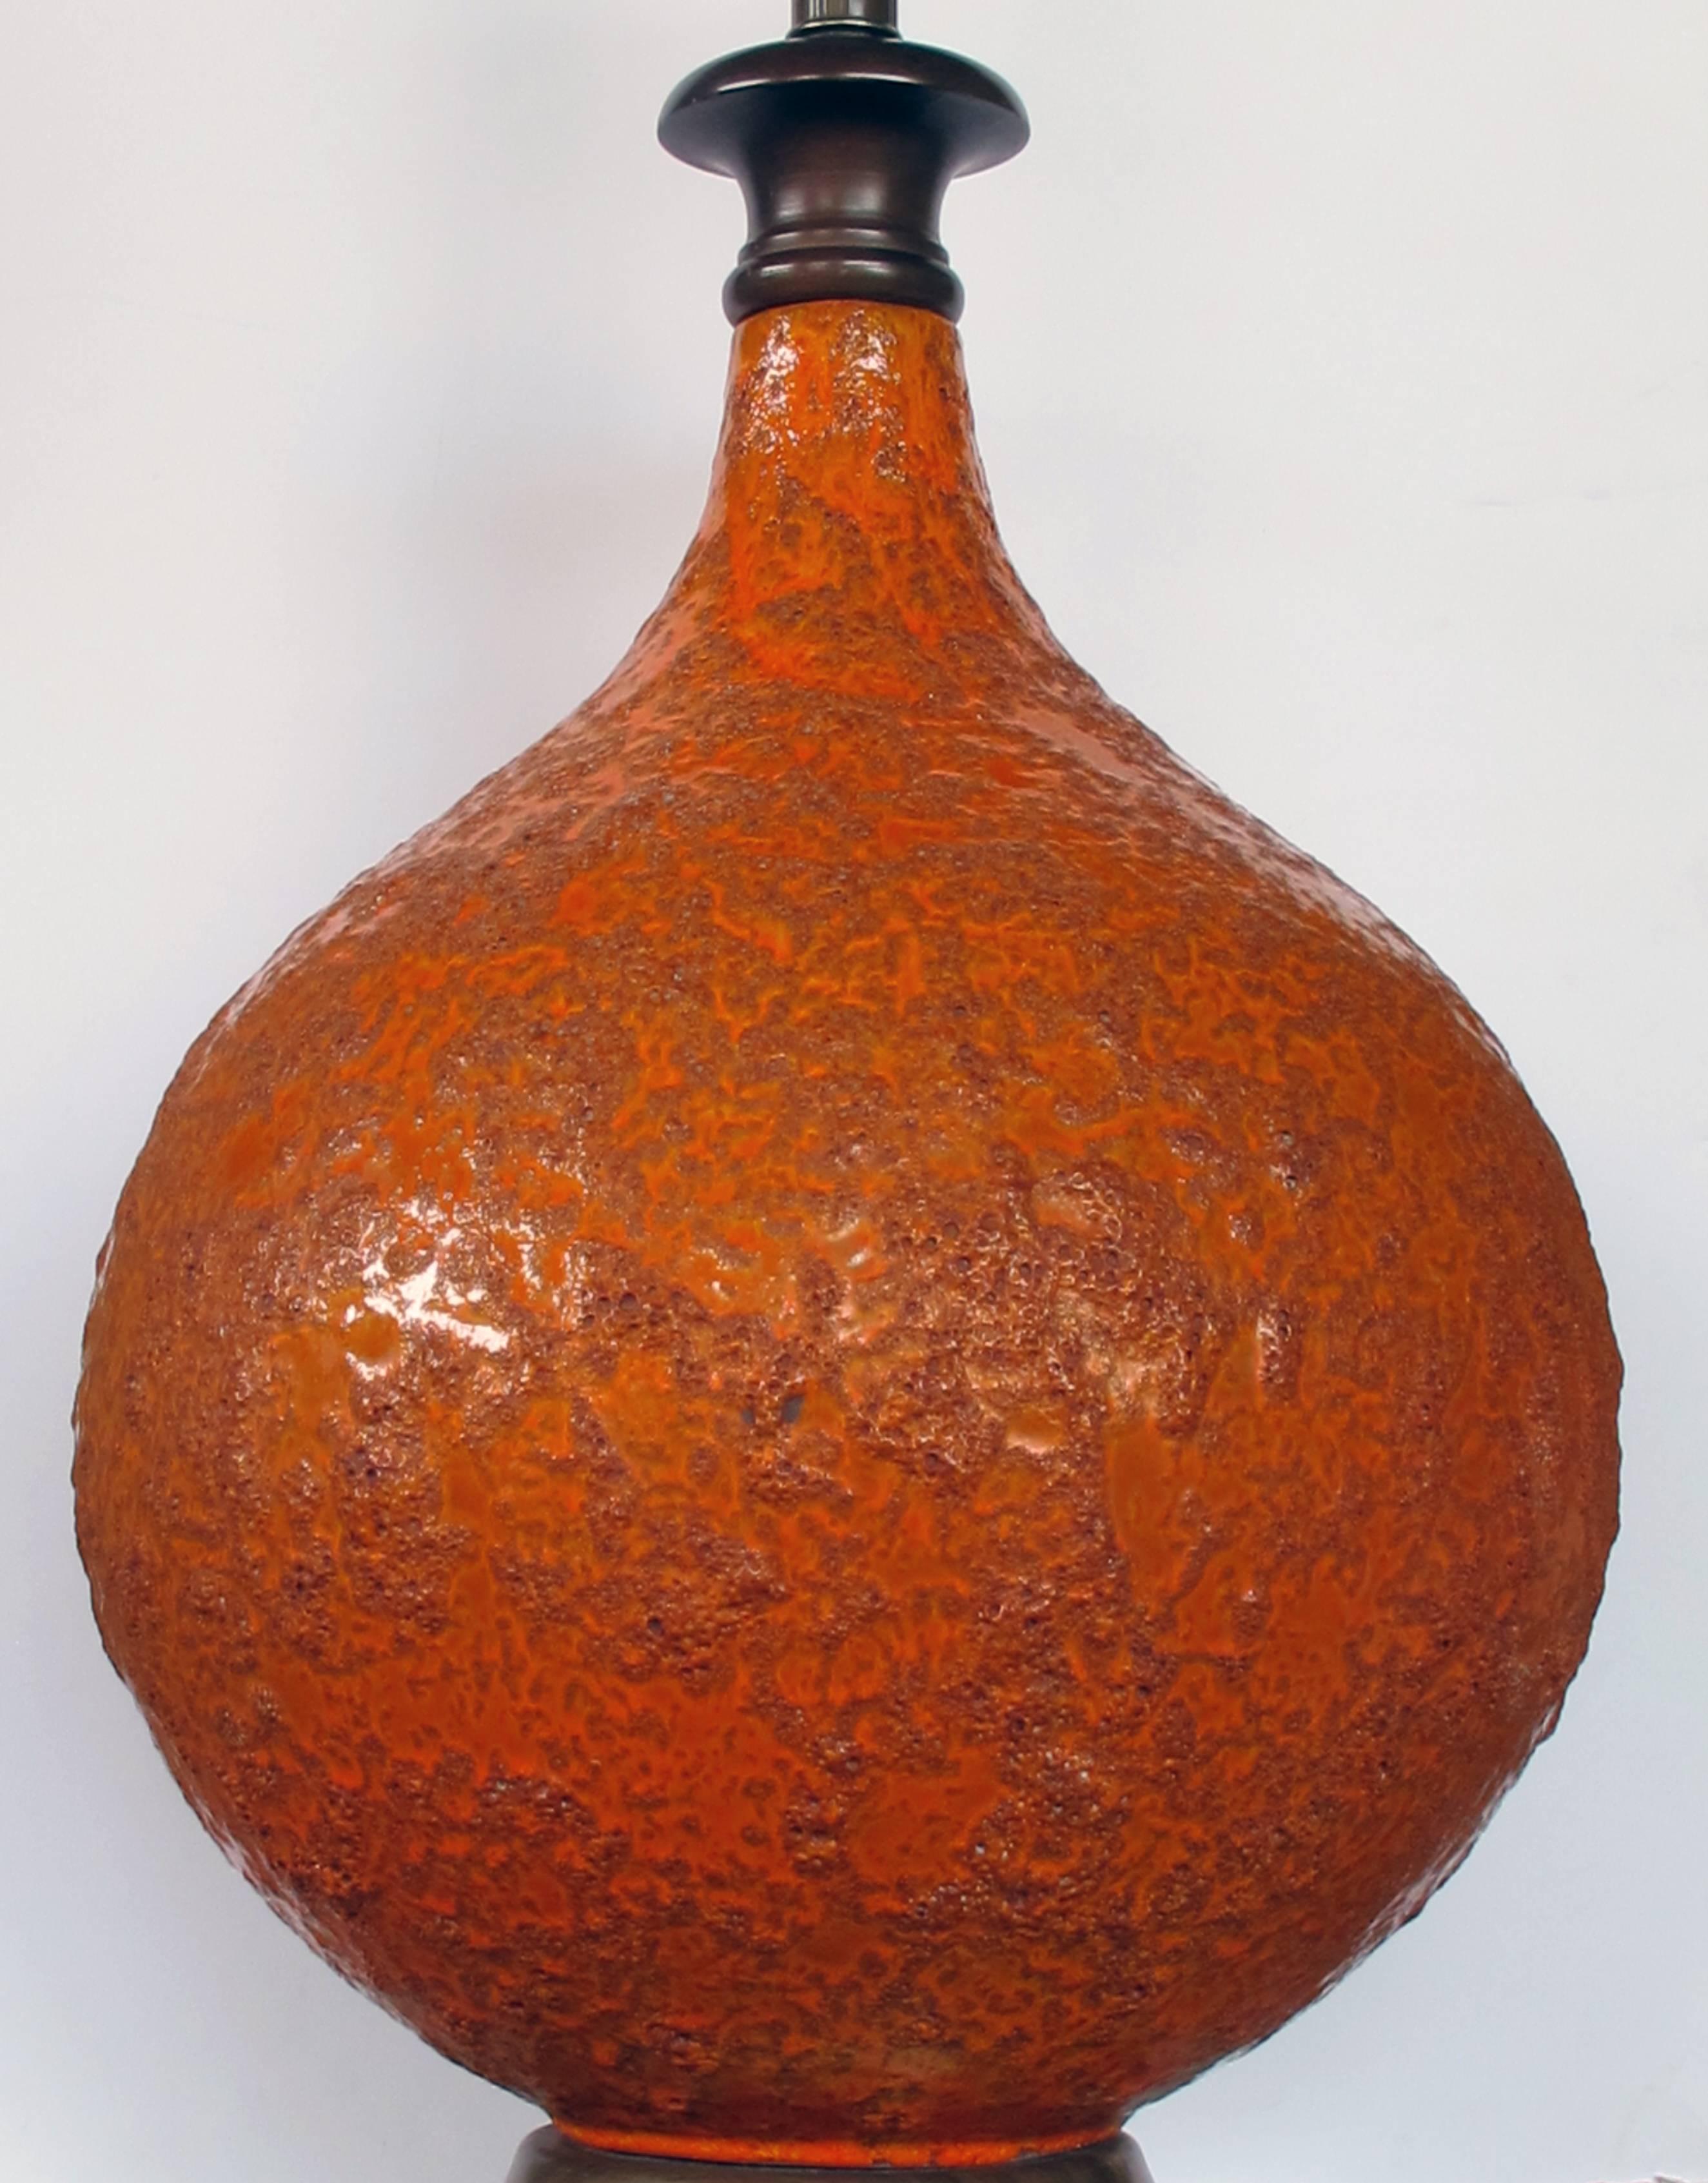 La grande lampe en forme de bouteille est recouverte d'une glaçure de cratère orange brûlée richement texturée.